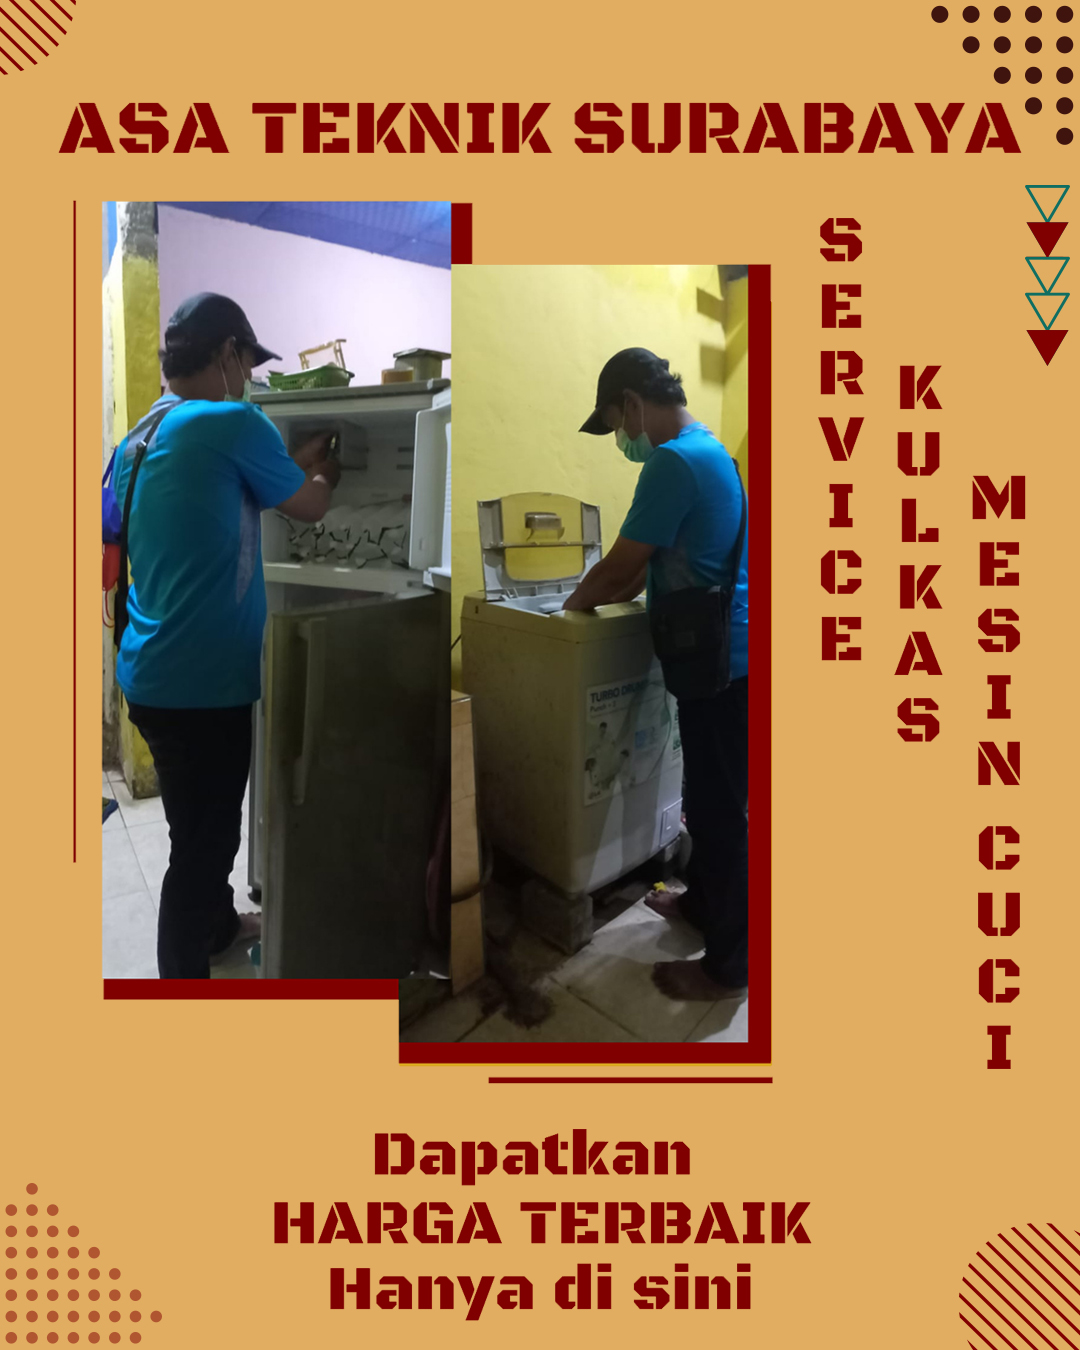 Jasa Service Kulkas dan Mesin Cuci Surabaya - Melayani Perbaikan untuk Seluruh Merk - Asa Teknik Surabaya